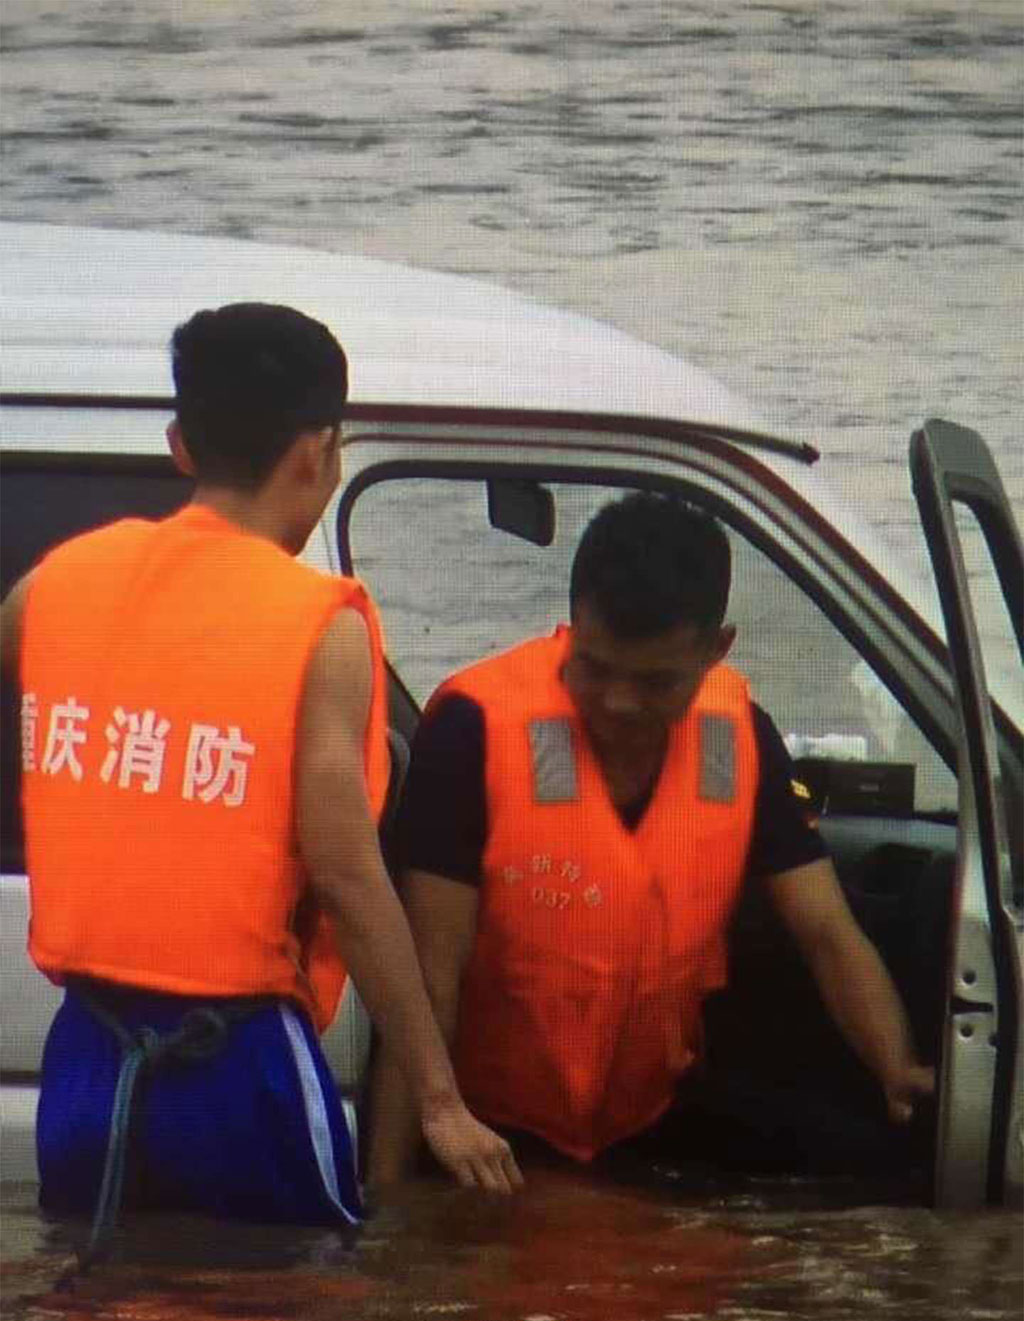 Tài xế Tan (phải) được cảnh sát giải cứu khi nước lũ đã dâng lên thắt lưng. Ảnh: SCMP